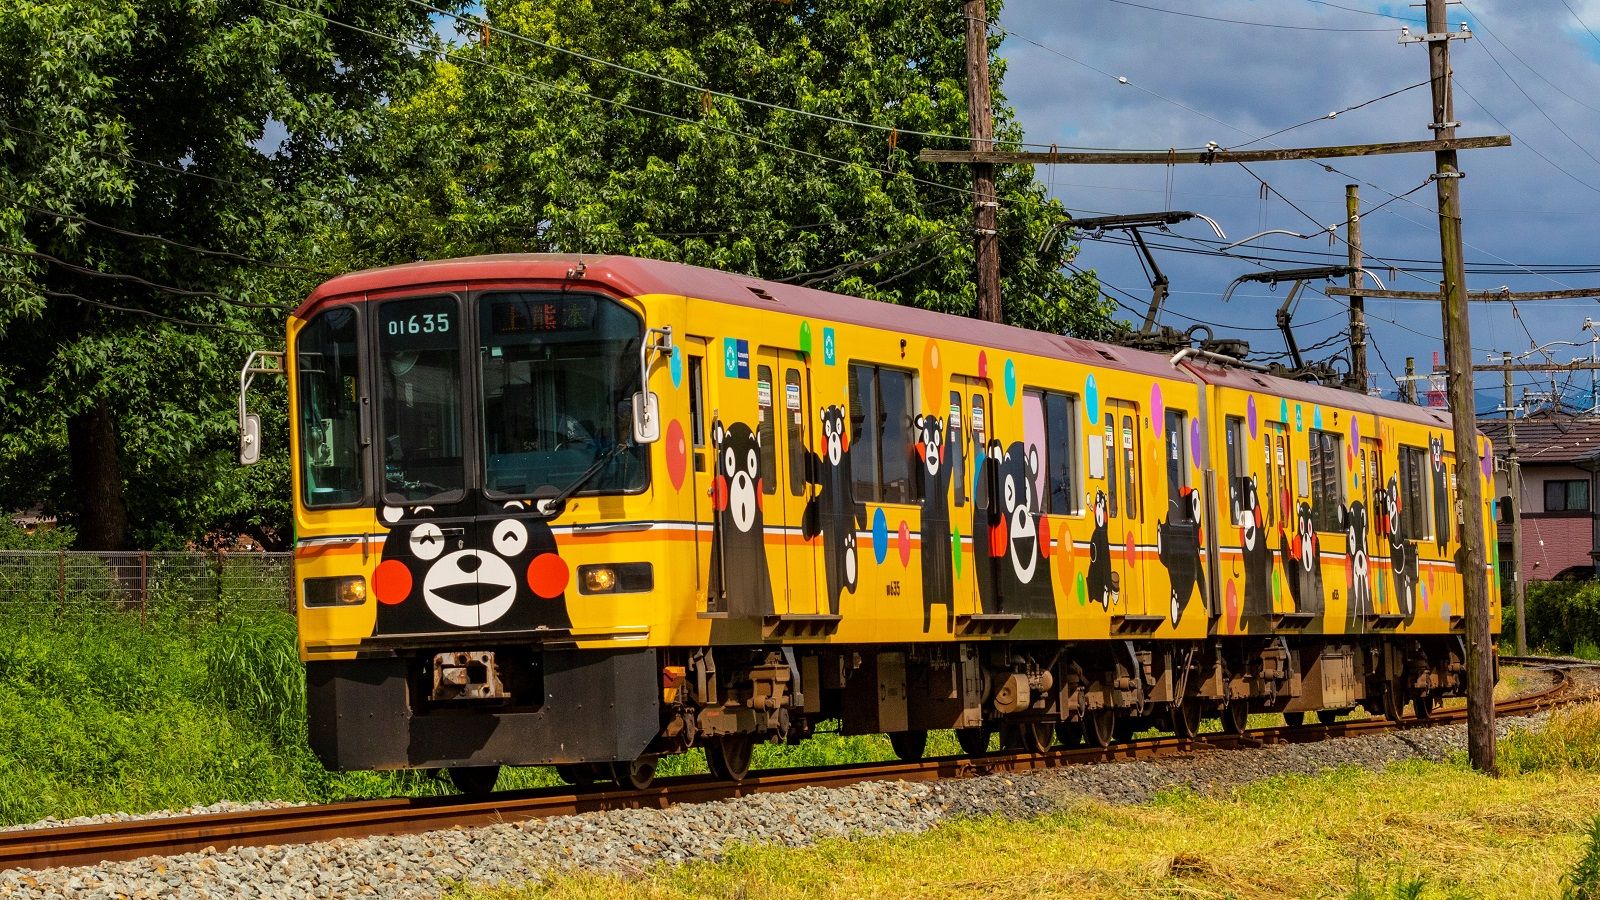 熊本電鉄 くまモン電車 の効果は絶大だった ローカル線 公共交通 東洋経済オンライン 経済ニュースの新基準